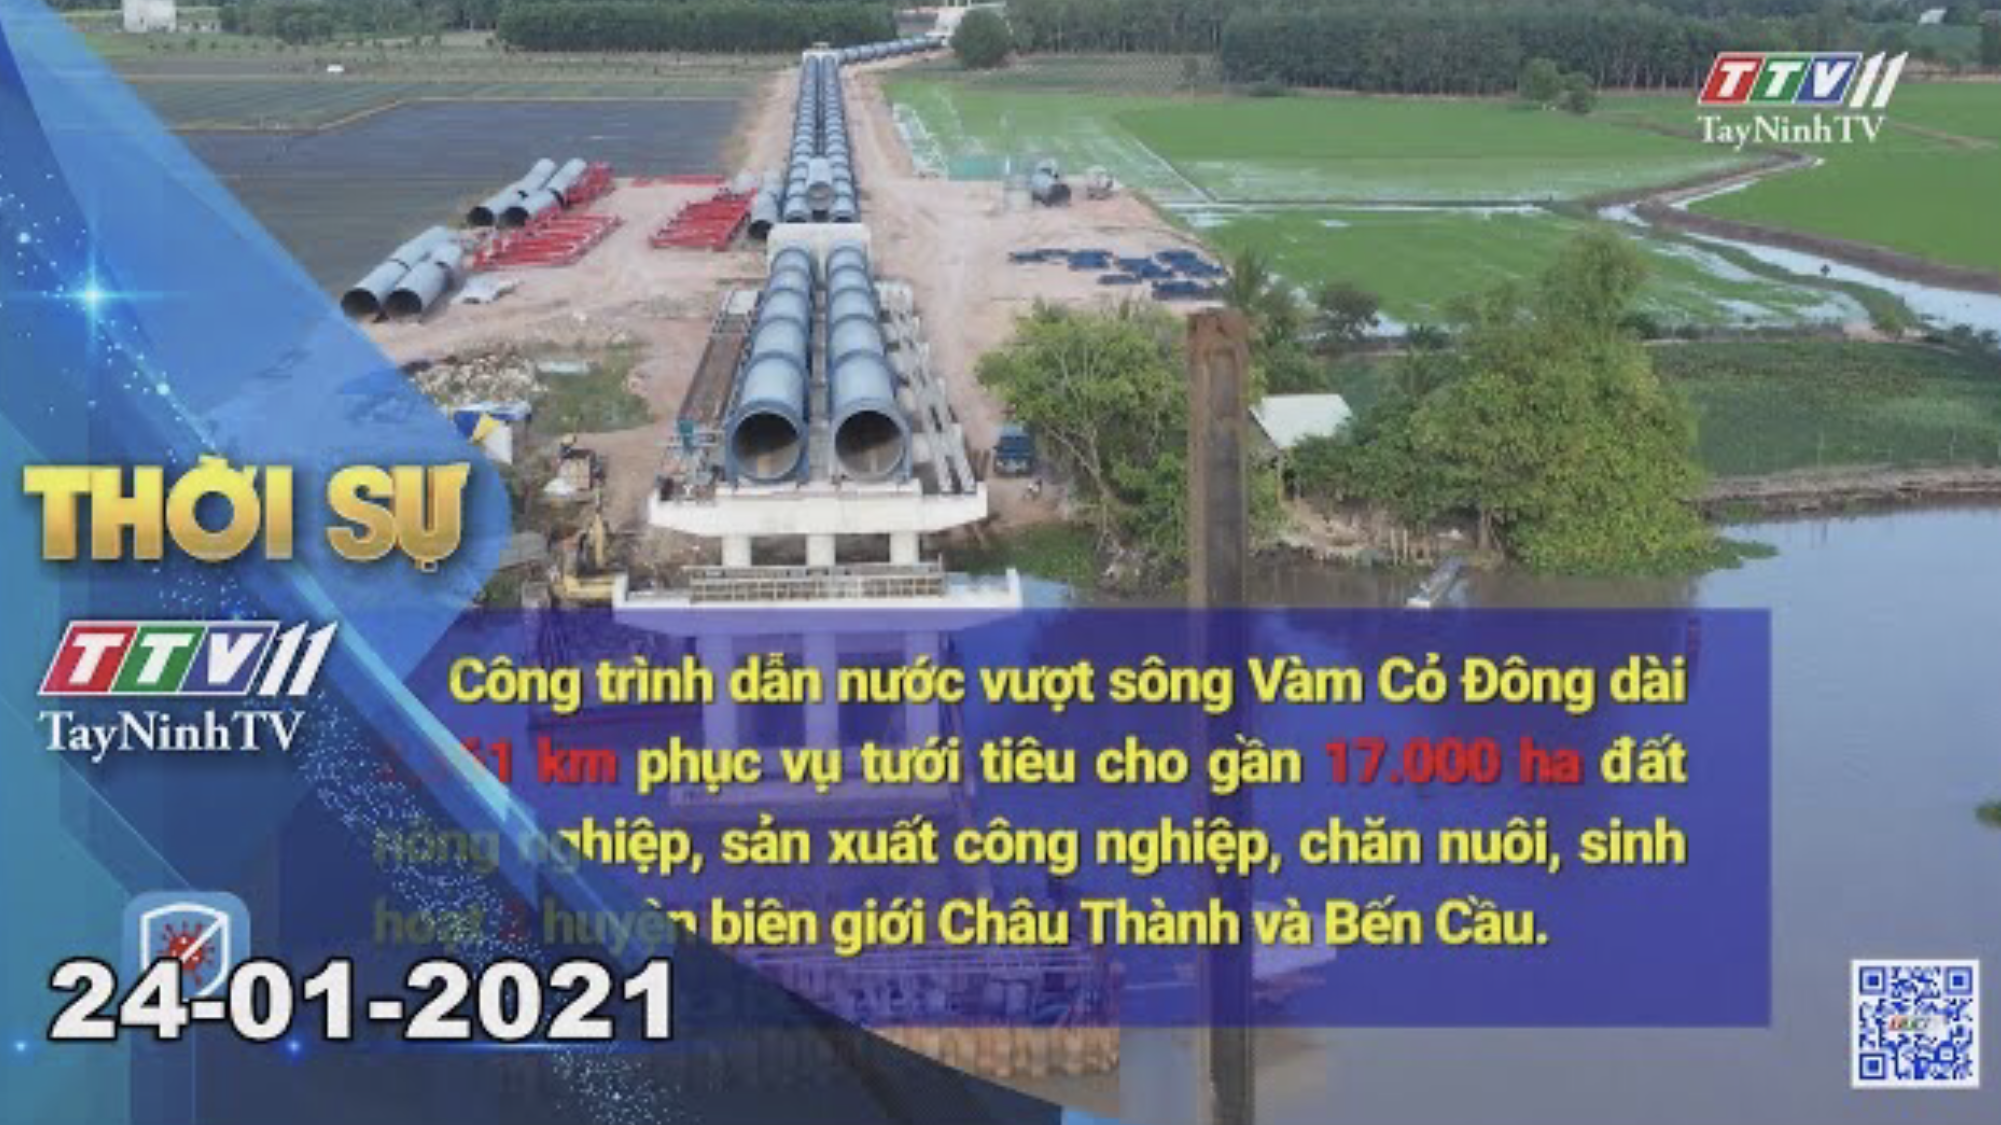 Thời sự Tây Ninh 24-01-2021 | Tin tức hôm nay | TayNinhTV